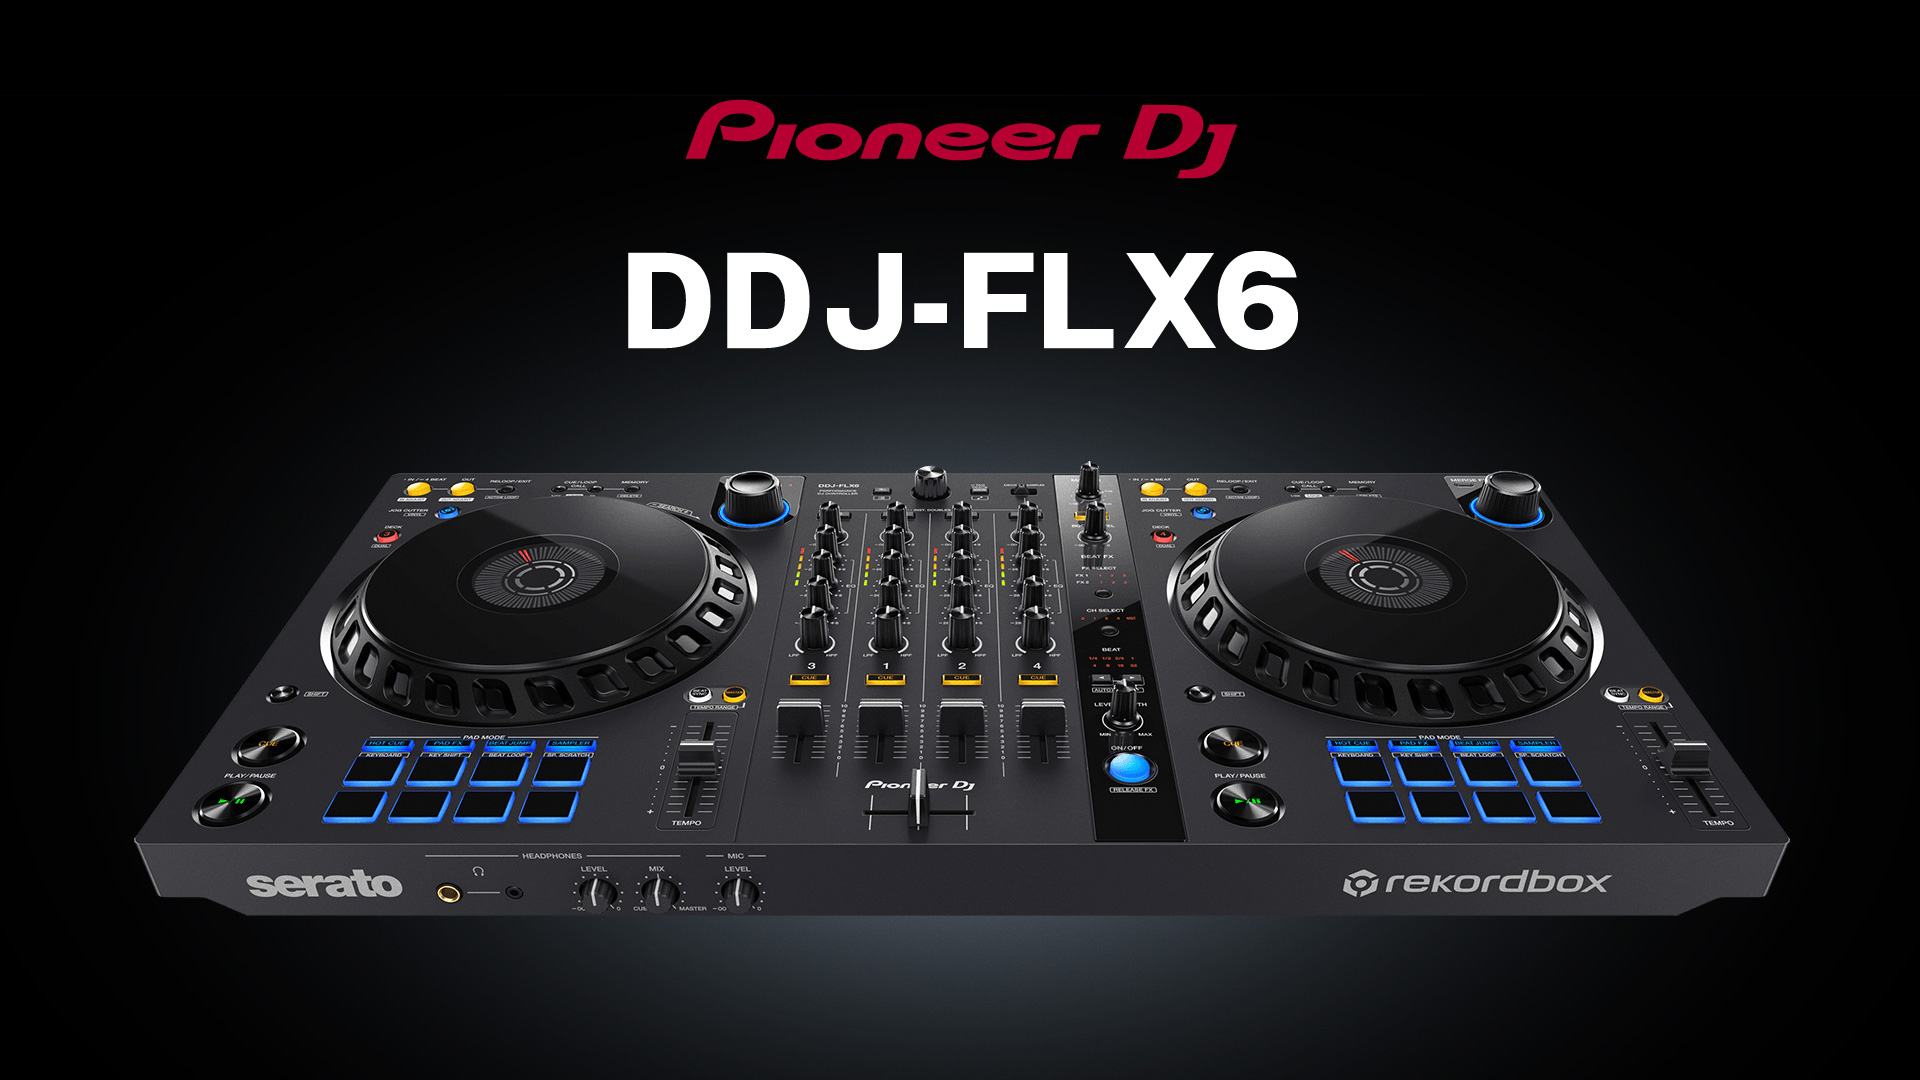 ジャンルレスなDJを可能にする新機能を搭載！次世代のDJコントローラー「DDJ-FLX6」